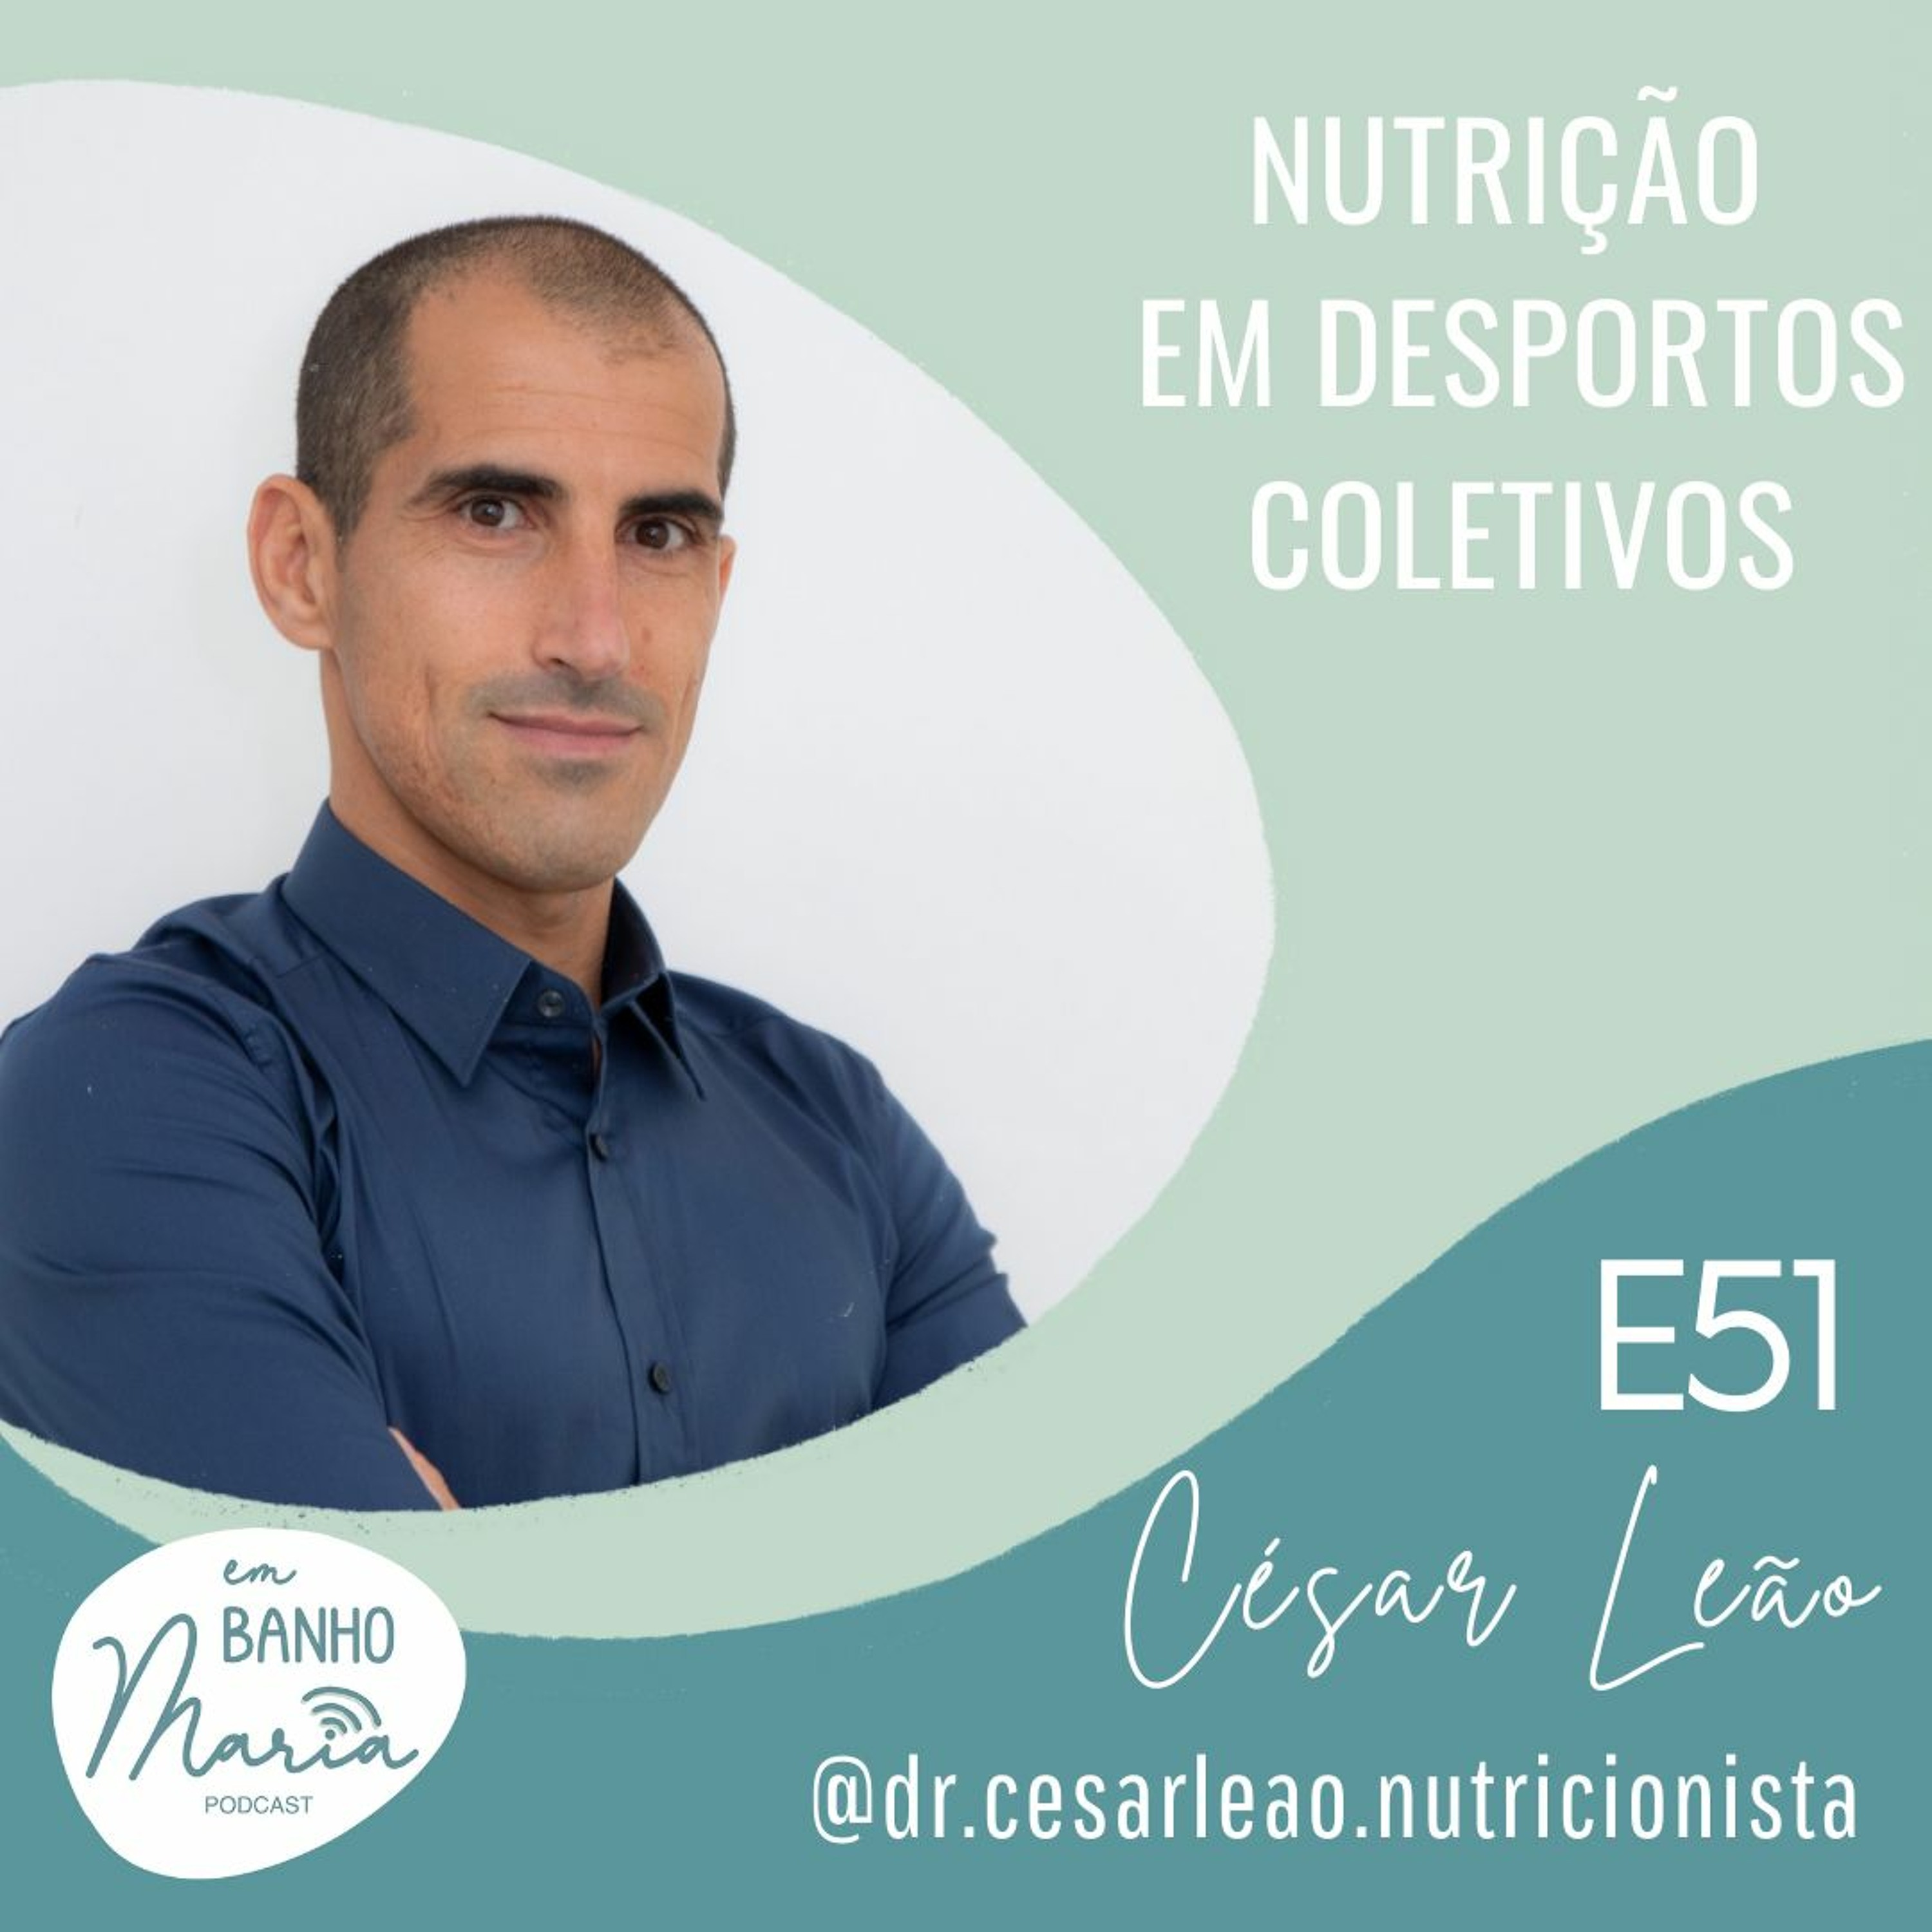 E51: Nutrição em Desportos Coletivos, com César Leão